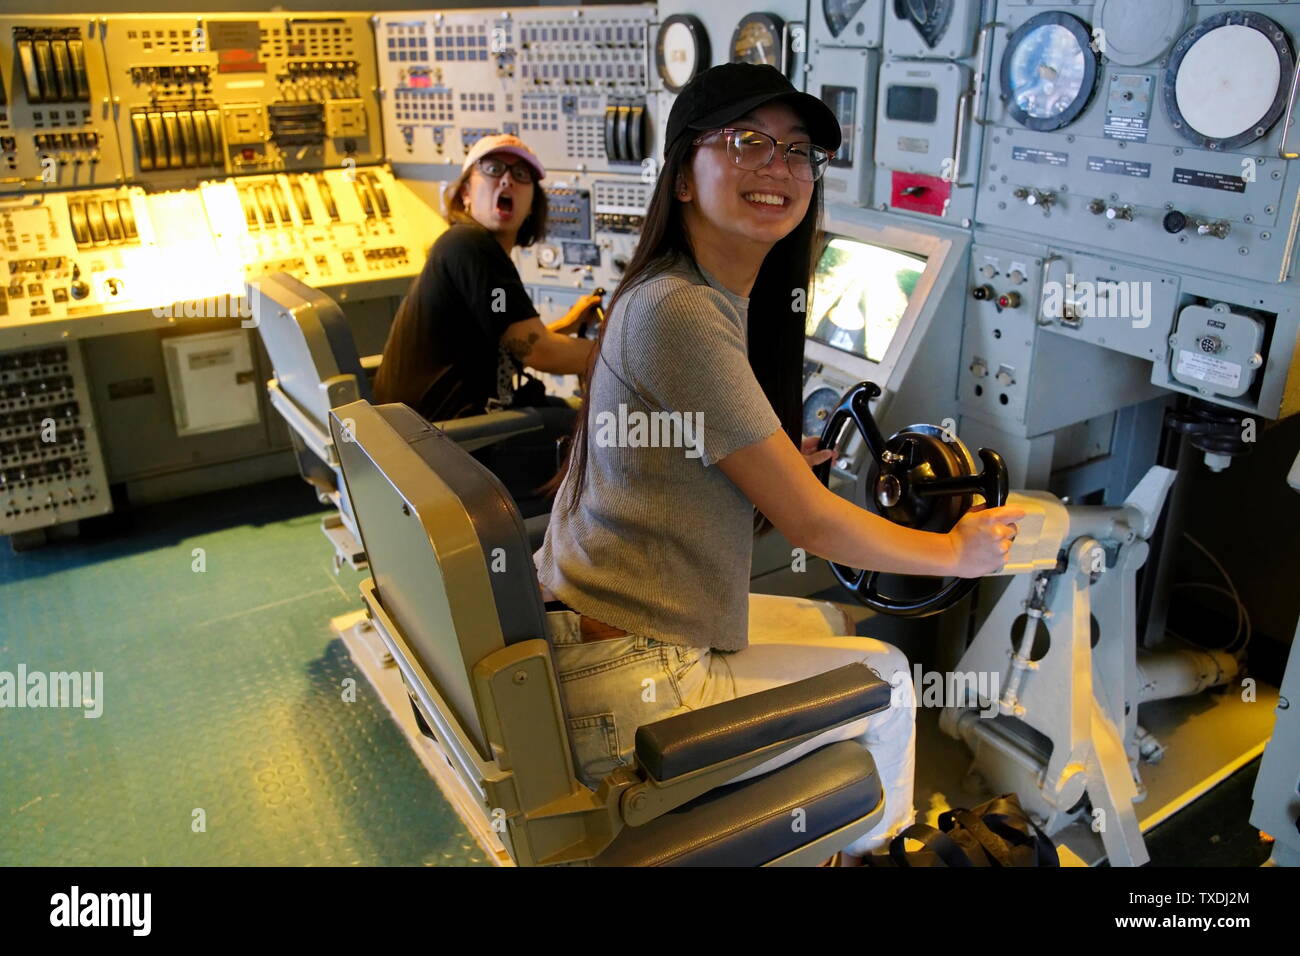 U-Boot Museum, Groton CT USA, Juni 2019. Junge amerikanische asiatische Frauen genießen die Control Station eines Amerikanischen ballistischen Raketen-U-Boots. Stockfoto